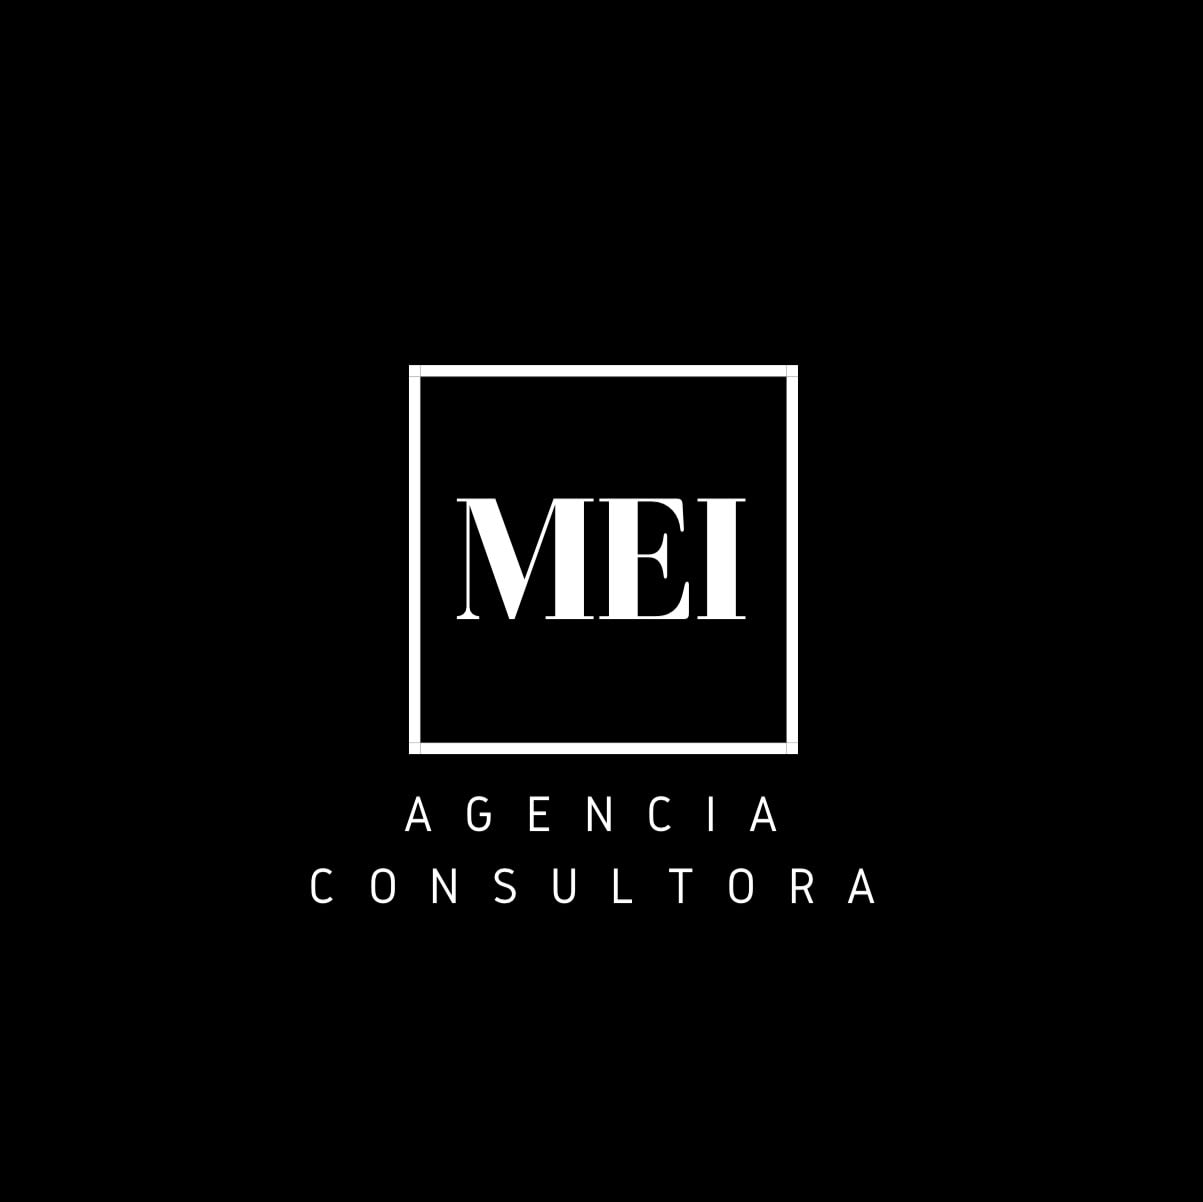 MEI Agencia Consultora